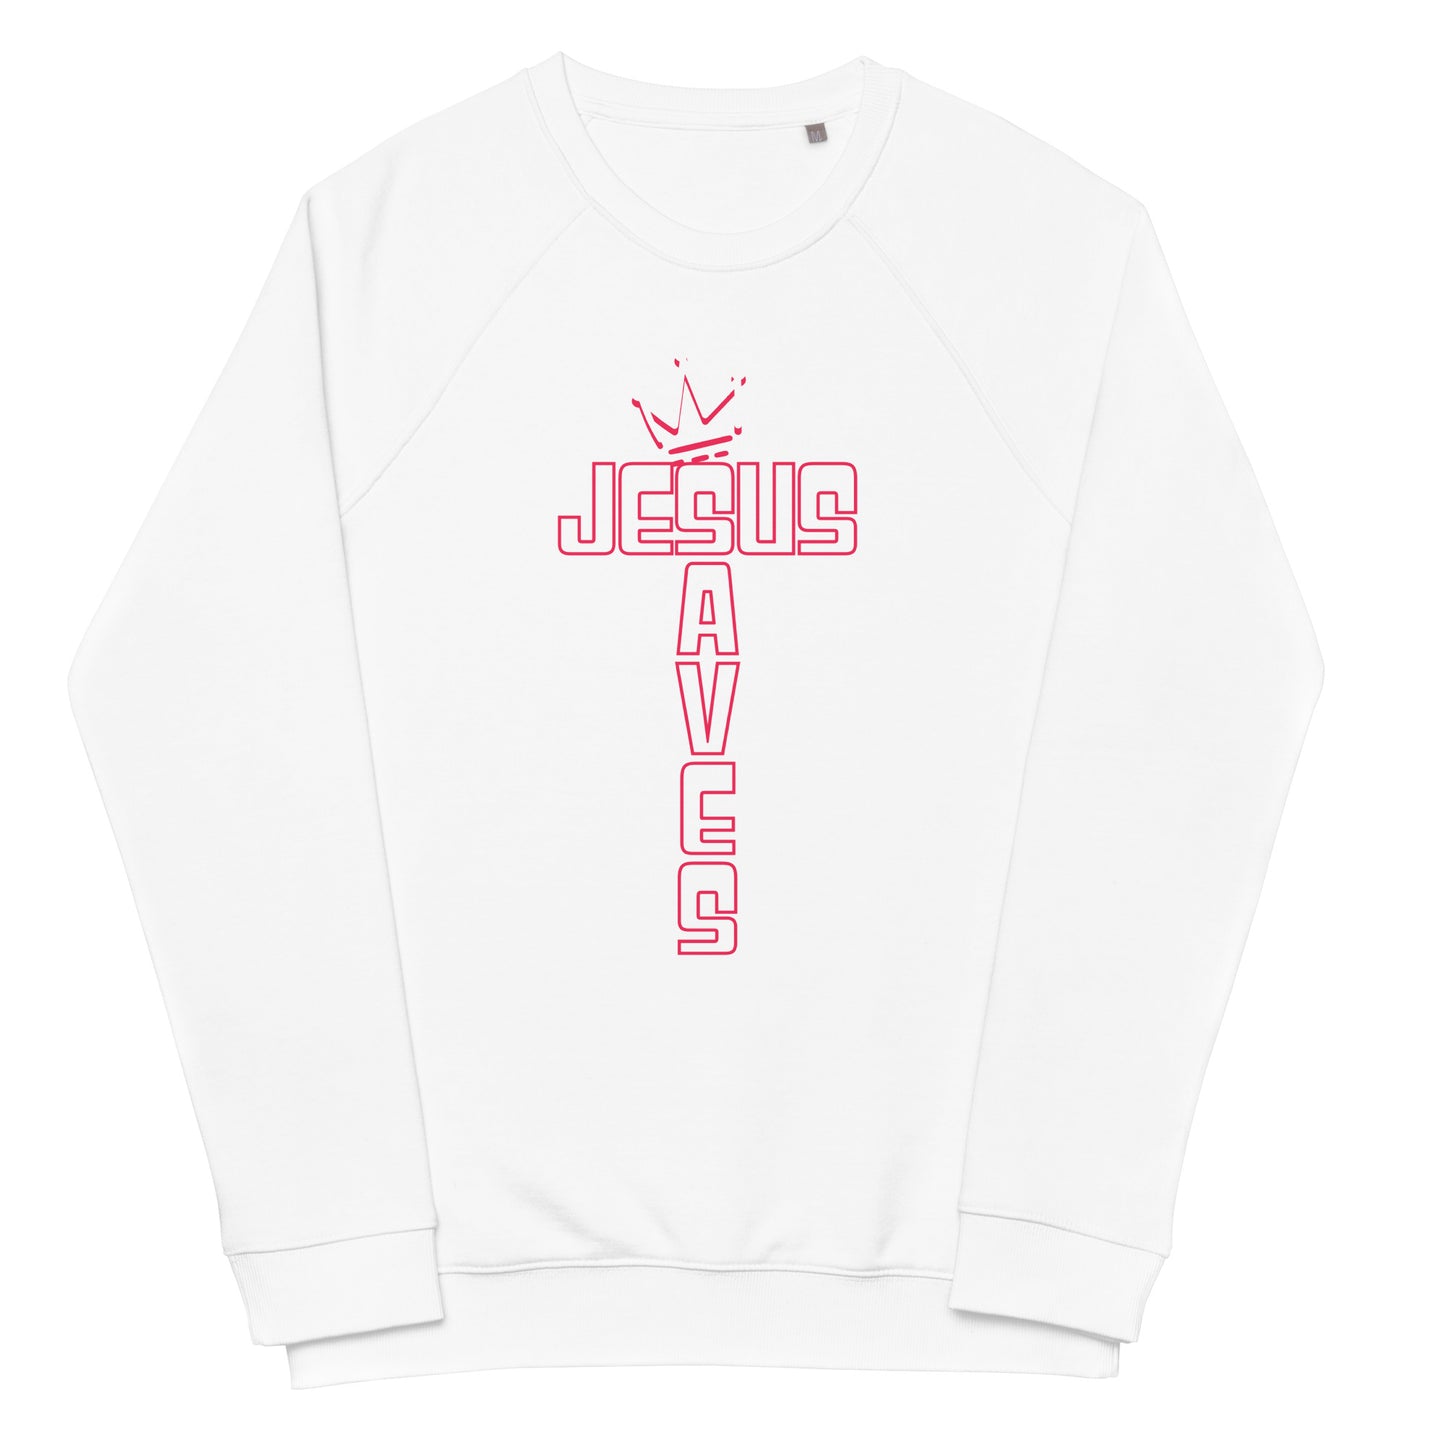 Jesus Saves - White Unisex organic raglan sweatshirt